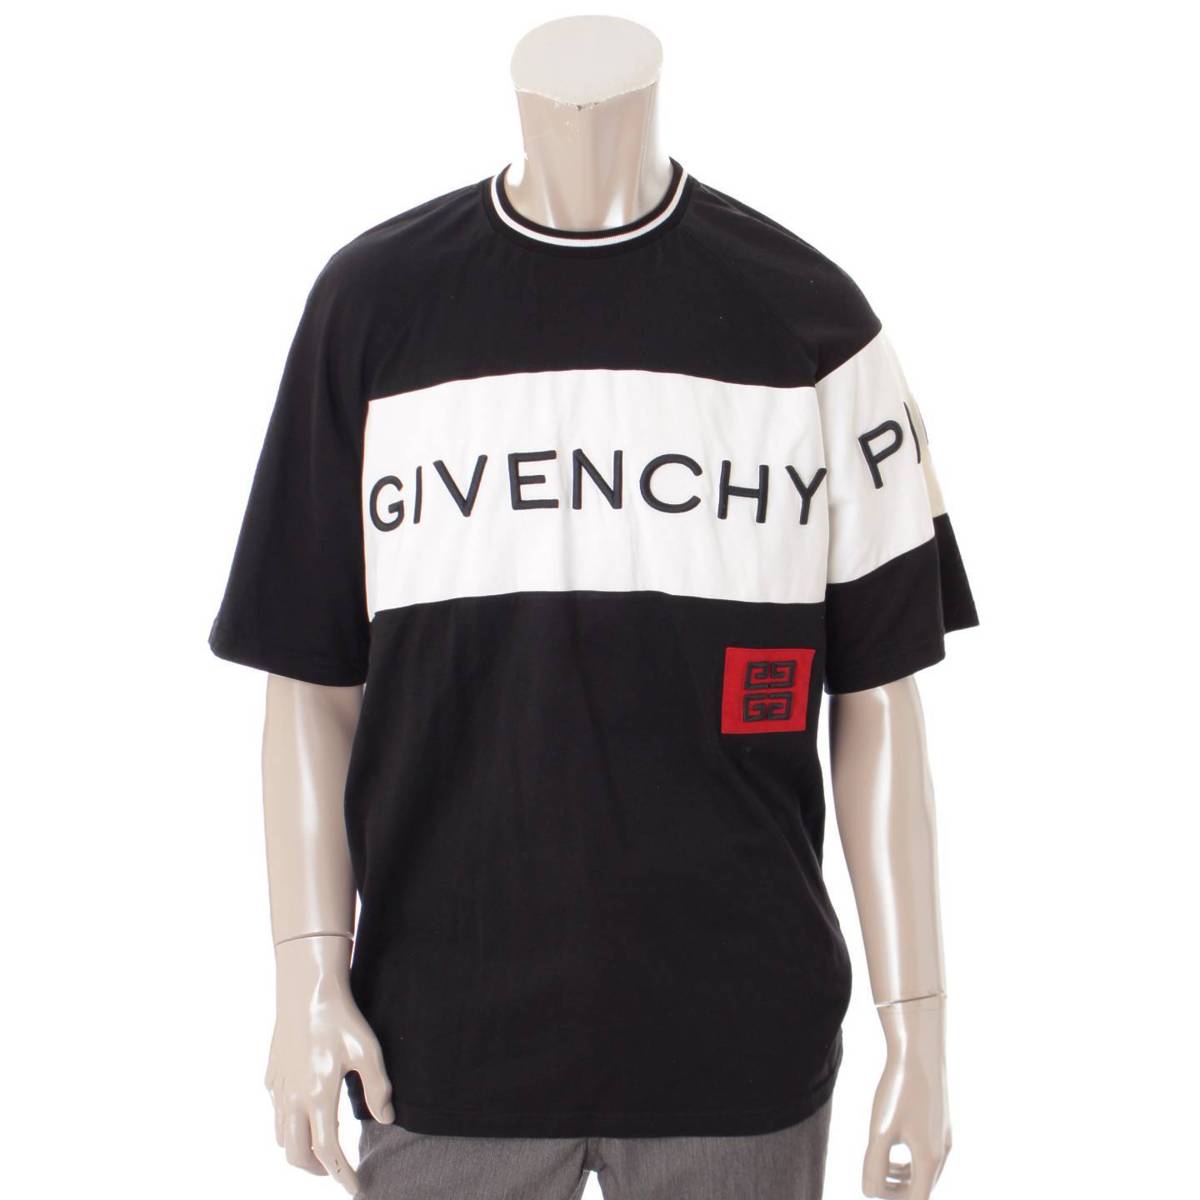 ジバンシー(GIVENCHY) 18AW ロゴ Tシャツ トップス ブラック×ホワイト L 中古 通販 retro レトロ